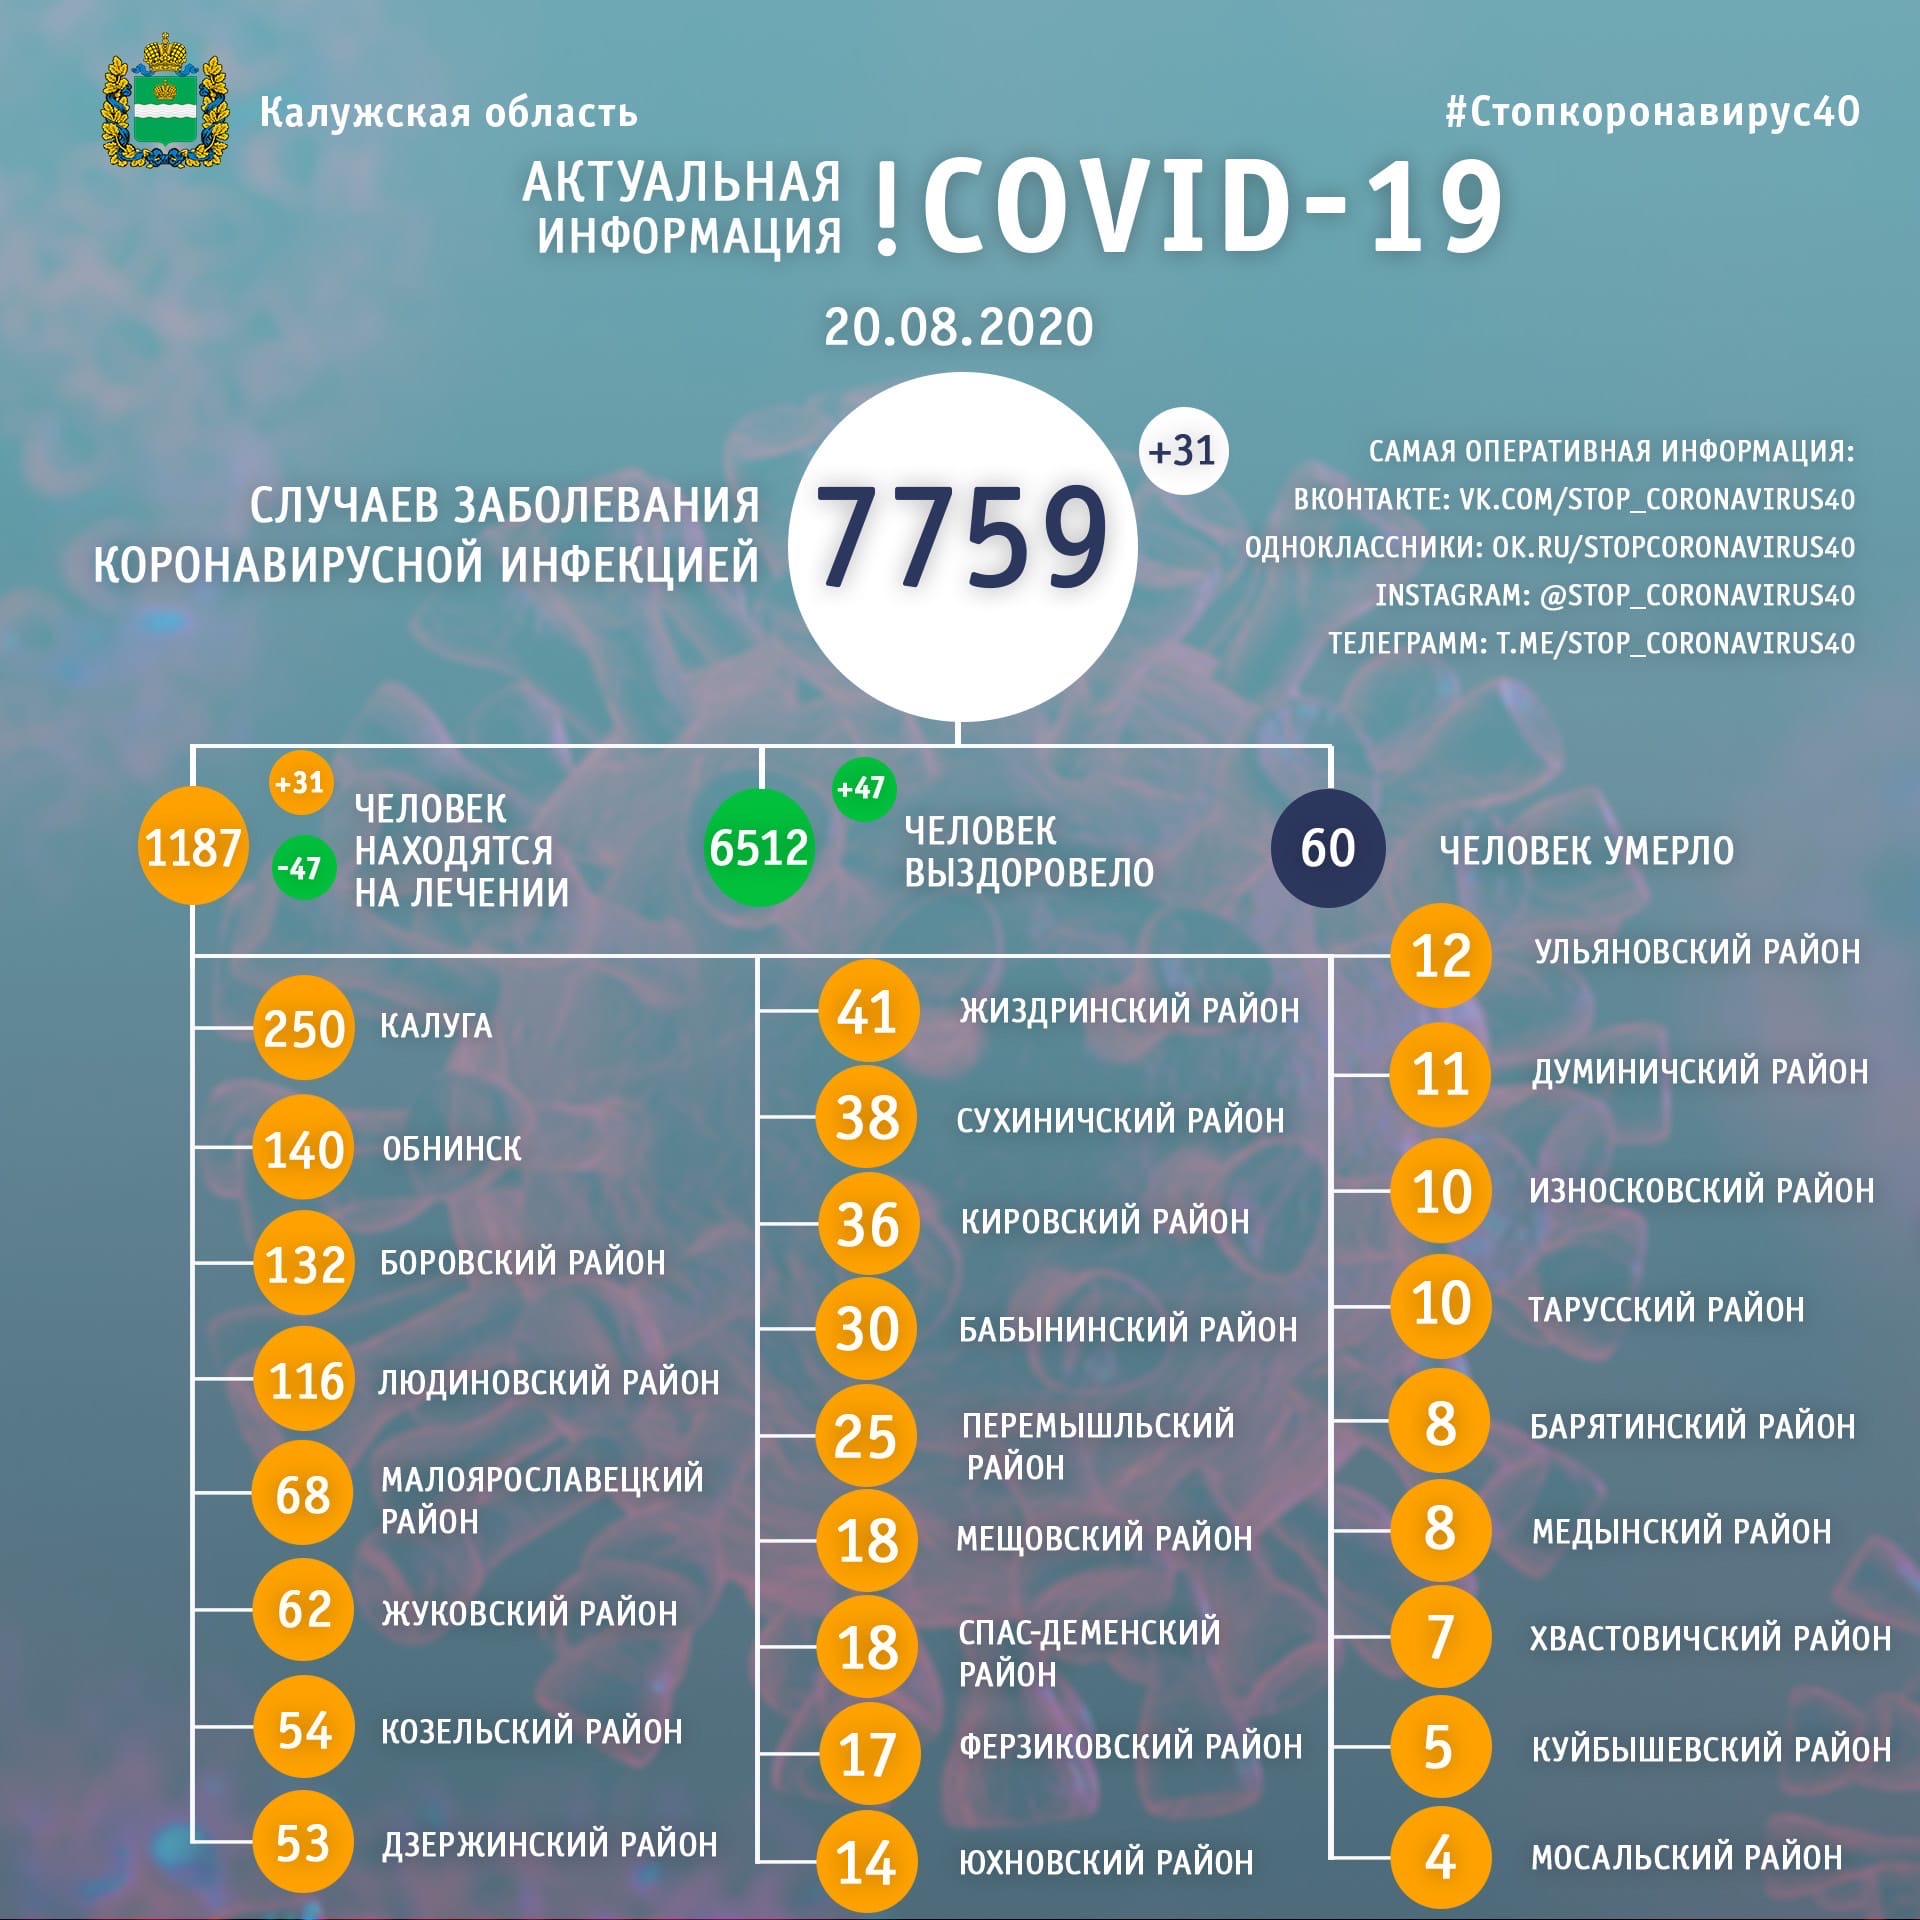 Официальная статистика по коронавирусу в Калужской области от регионального оперативного штаба на 20 августа 2020 года.